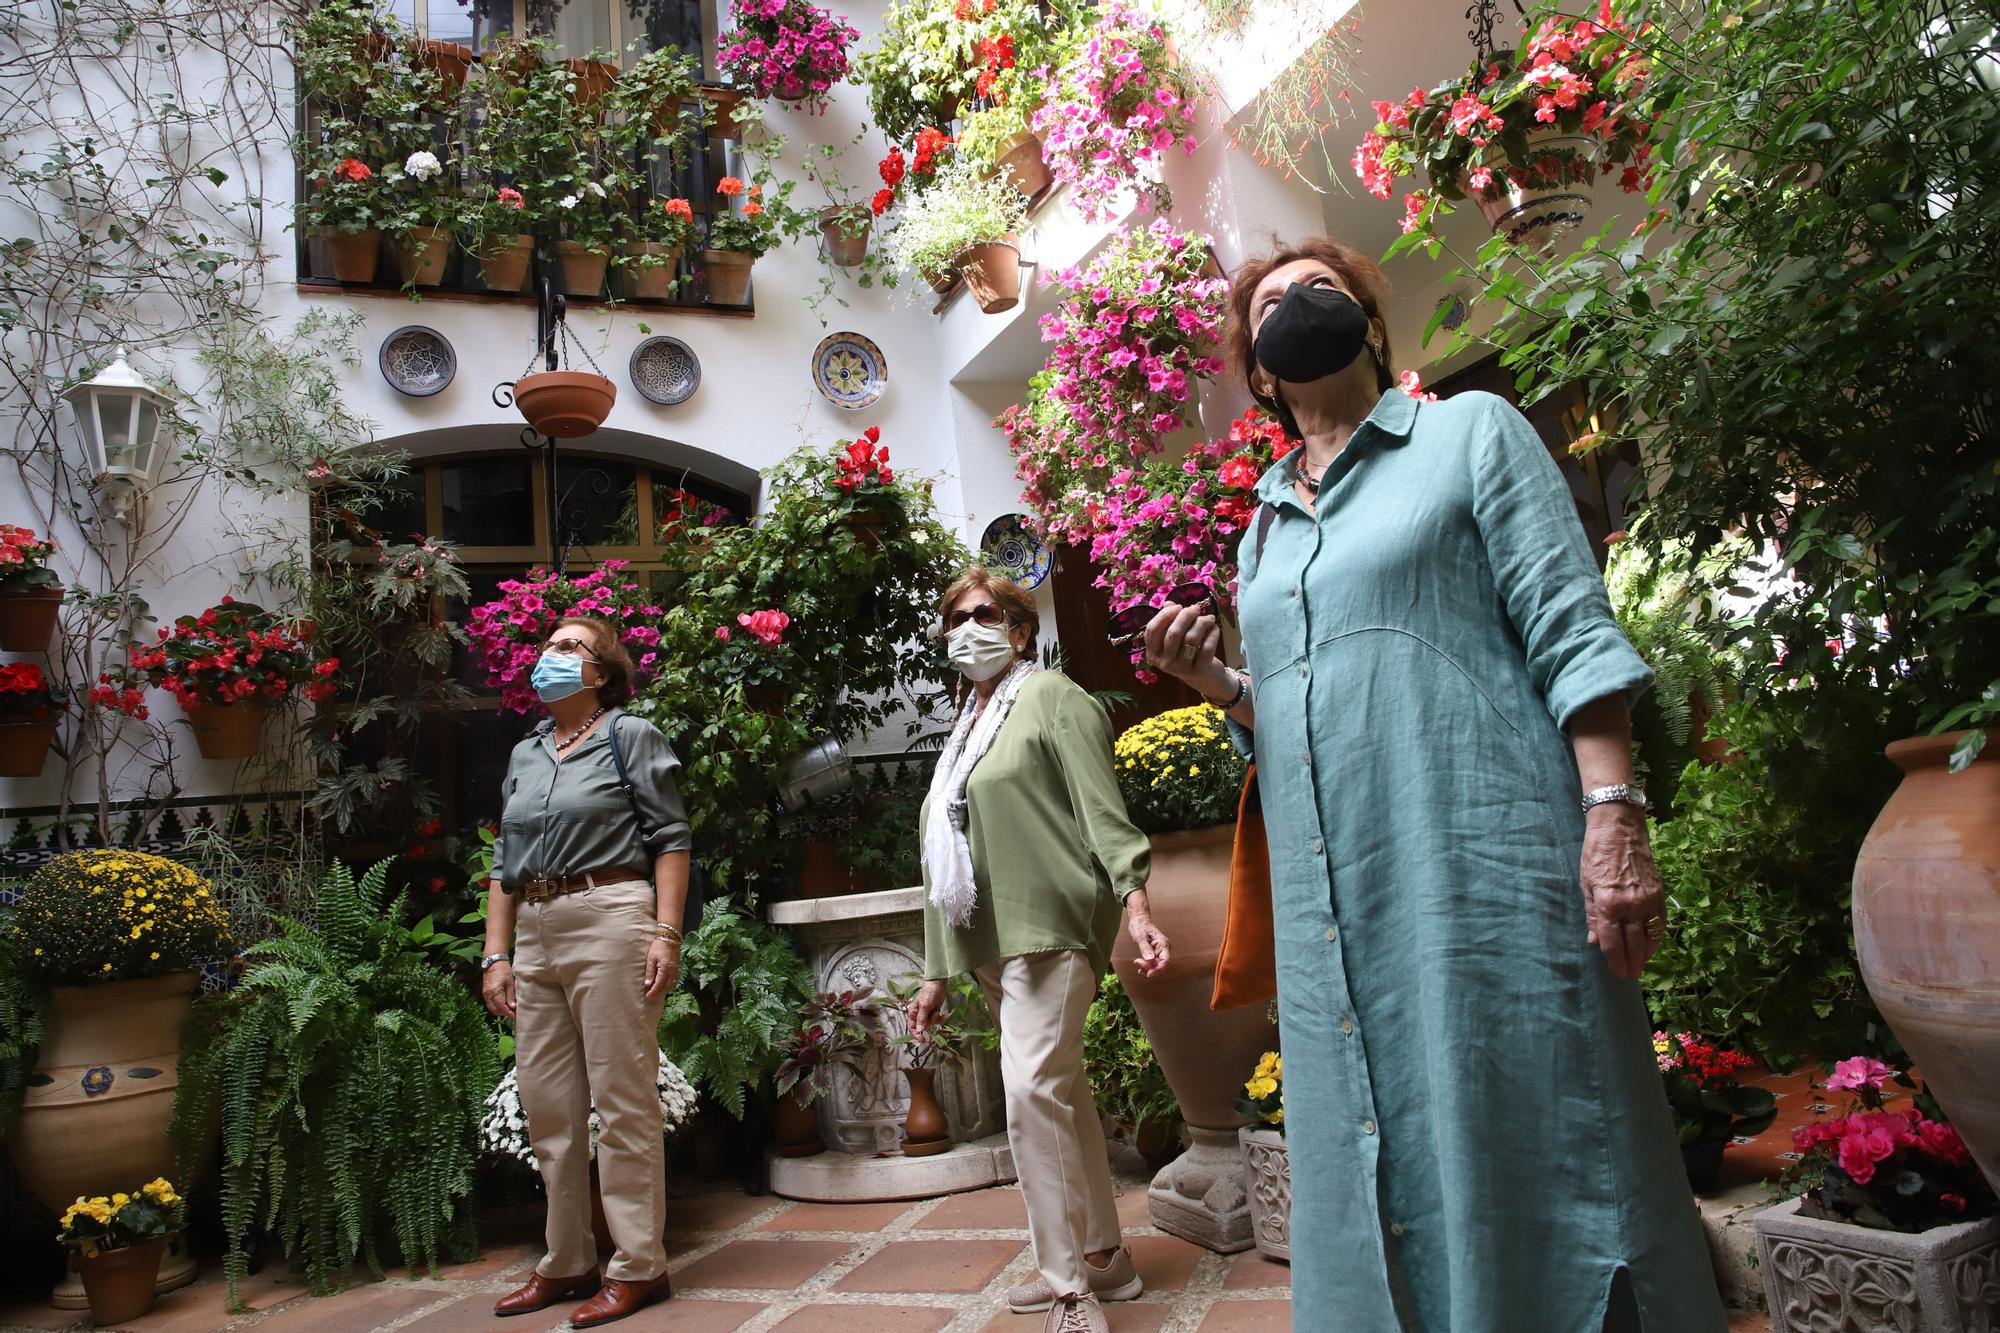 Los patios de otoño y Flora animan el fin de semana en Córdoba